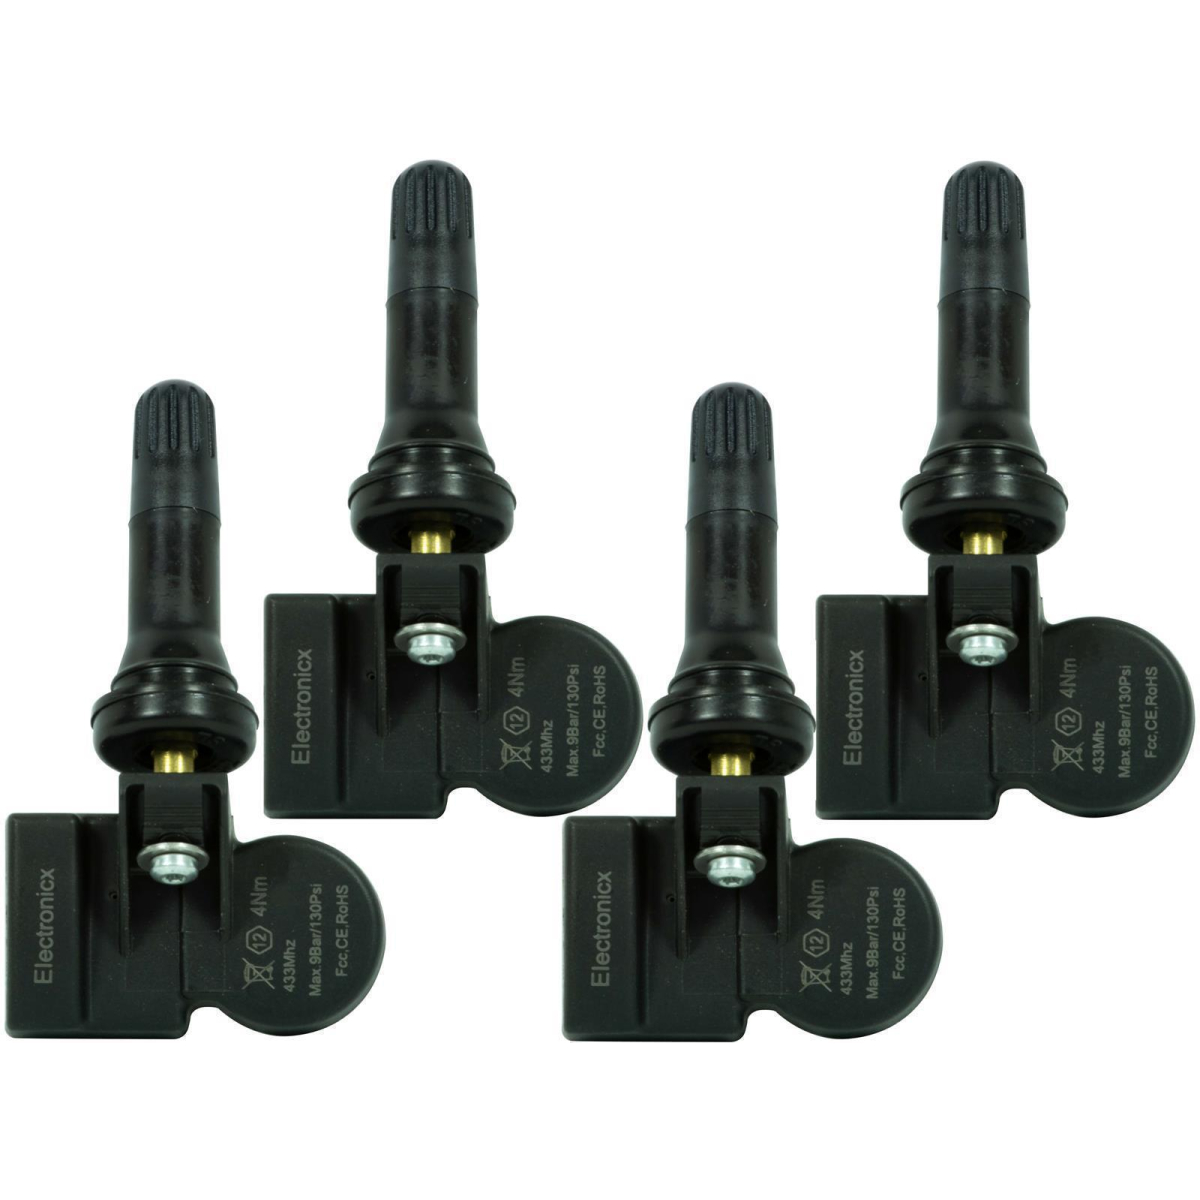 4 tire pressure sensors rdks sensors rubber valve for DFSK 580 01.2020-12.2020